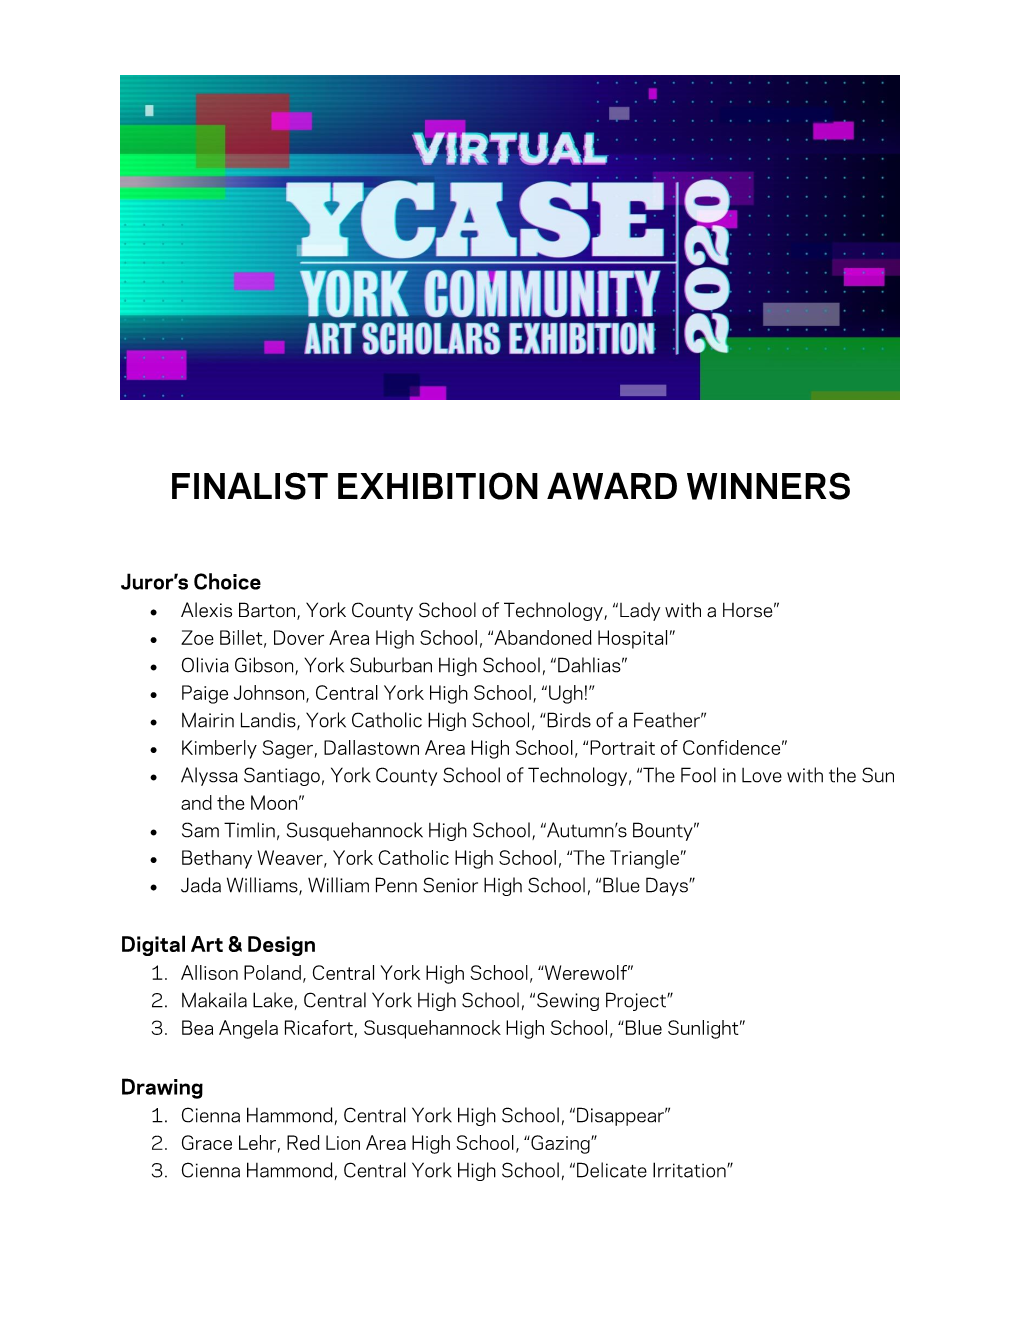 YCASE 2020 Award Winners